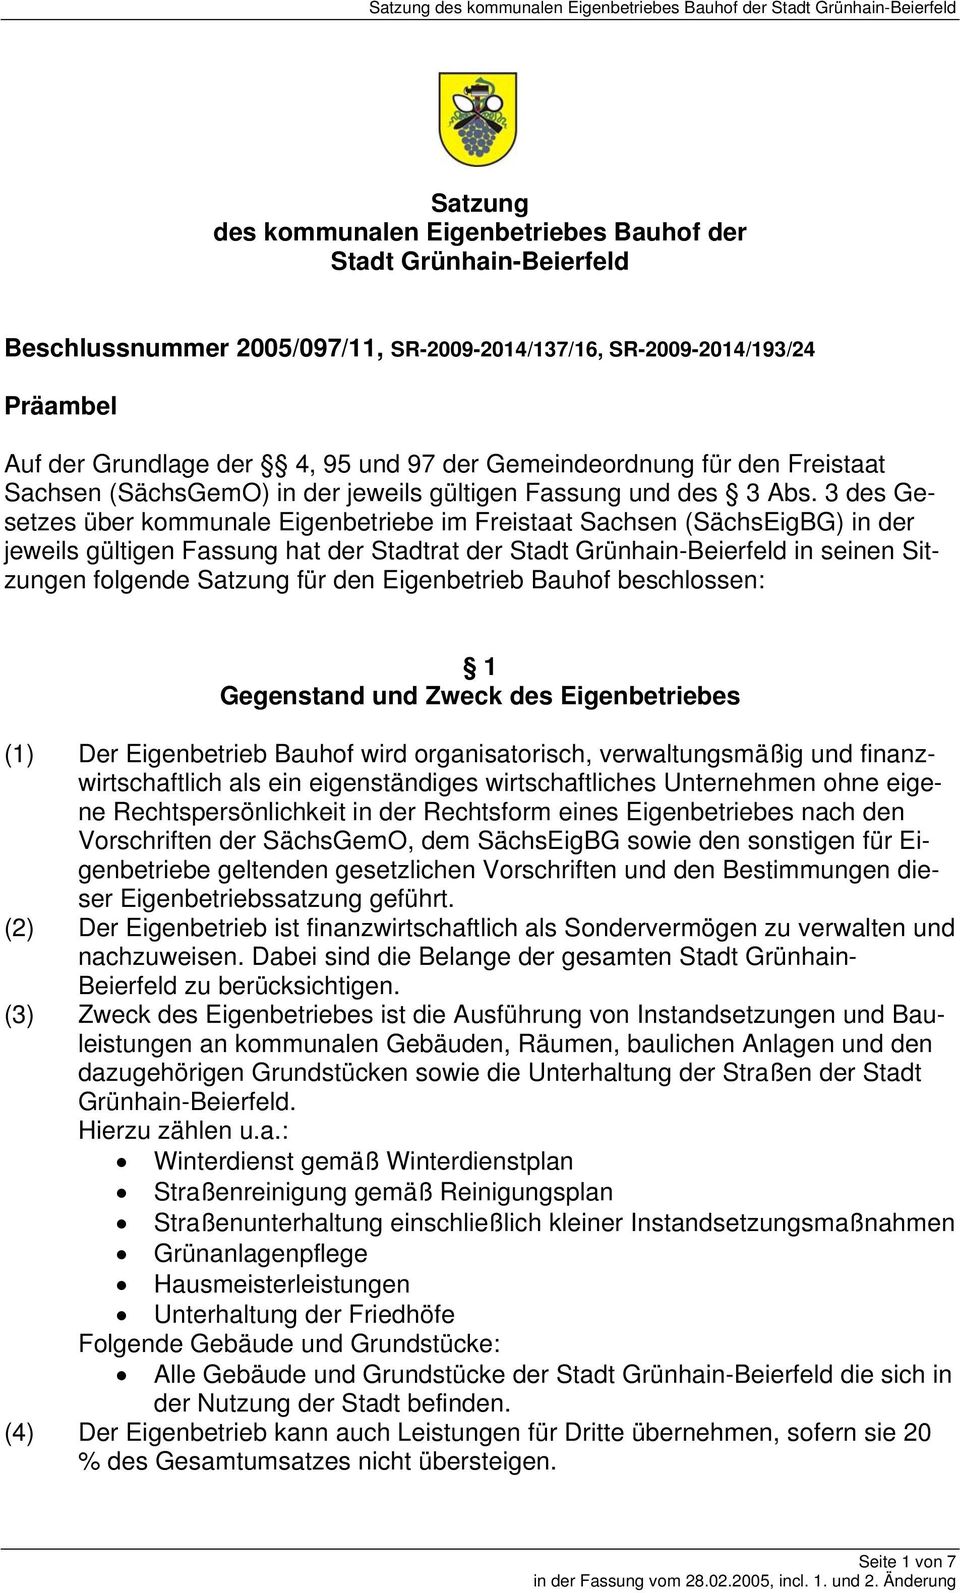 3 des Gesetzes über kommunale Eigenbetriebe im Freistaat Sachsen (SächsEigBG) in der jeweils gültigen Fassung hat der Stadtrat der Stadt Grünhain-Beierfeld in seinen Sitzungen folgende Satzung für